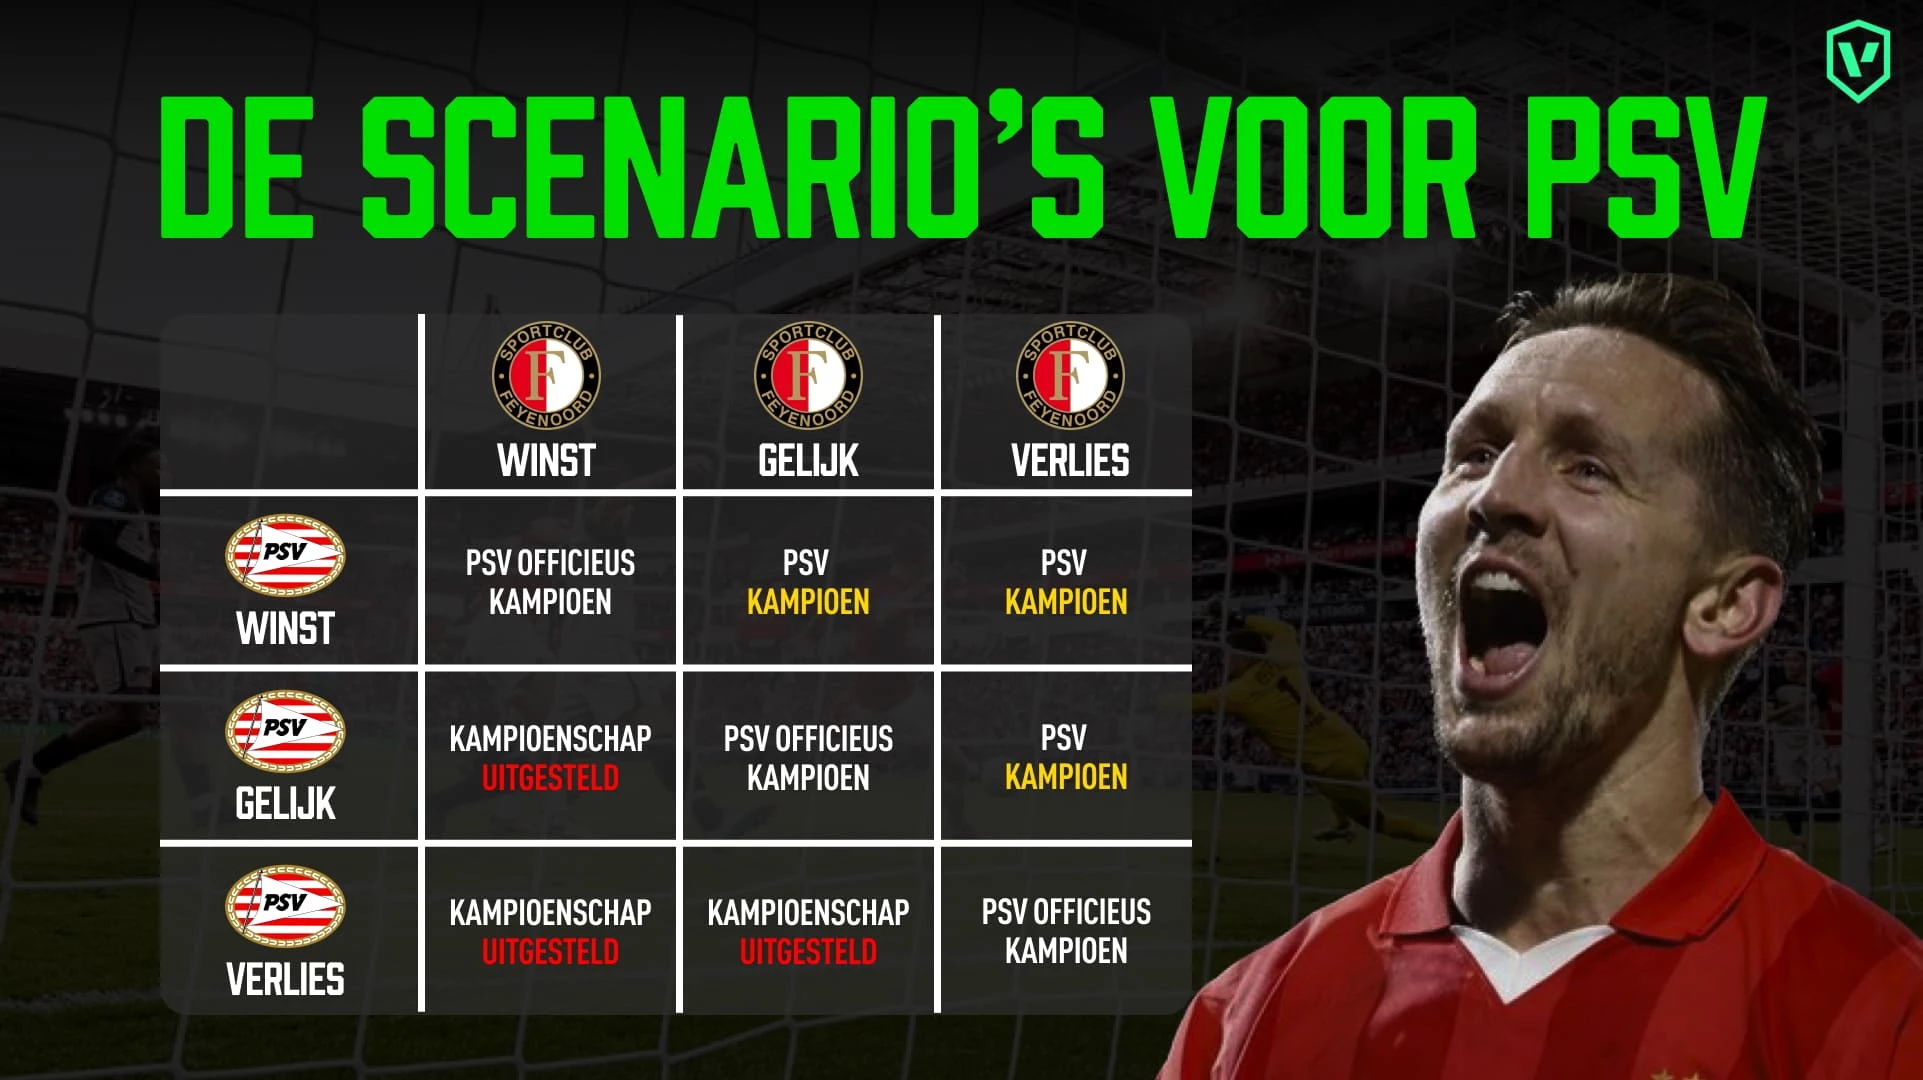 De scenario's voor PSV vanavond